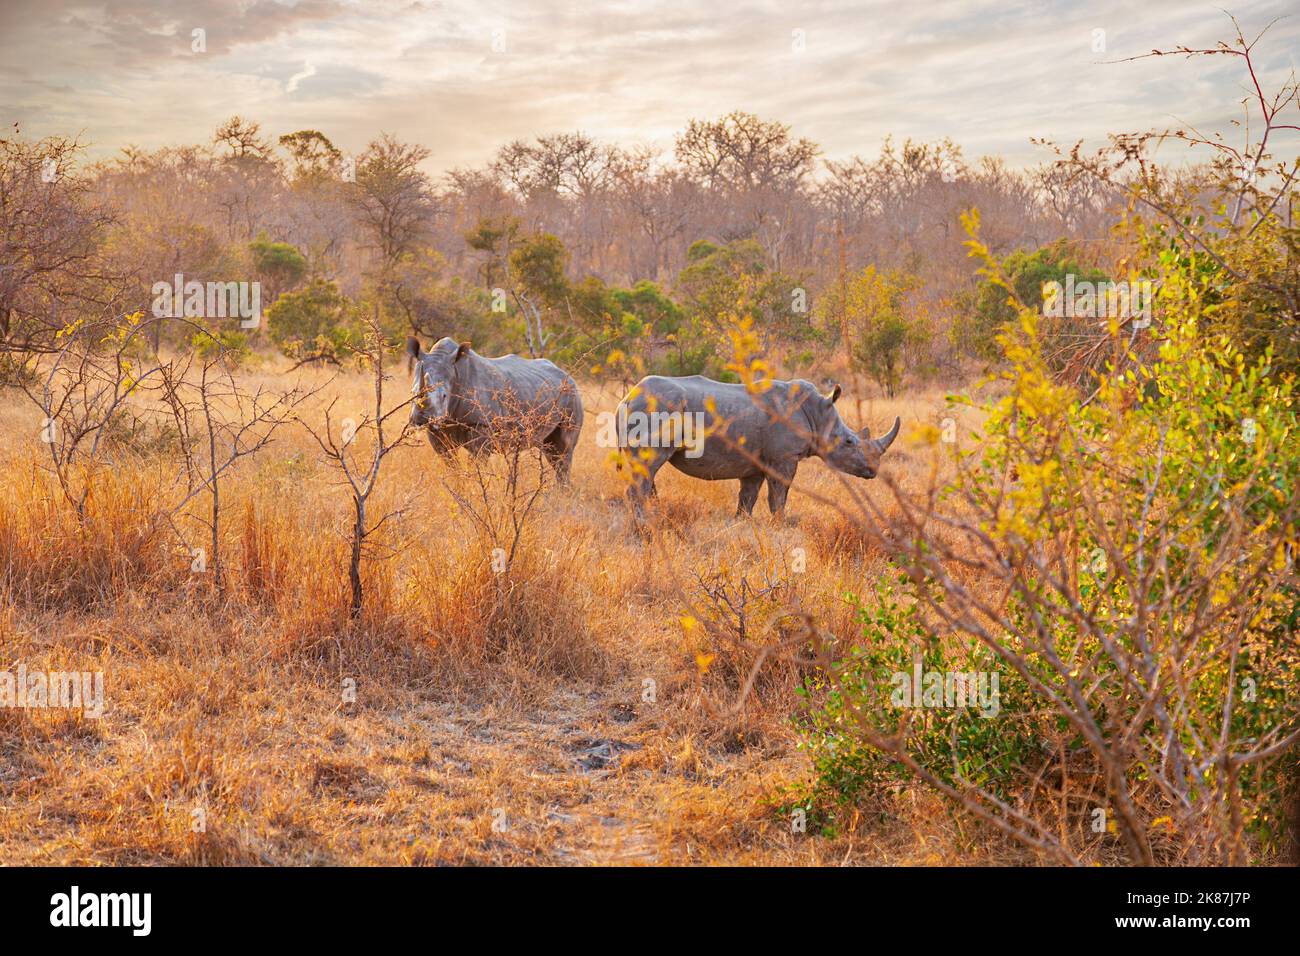 Par de rinocerontes negros en peligro de extinción que se encuentran juntos Foto de stock